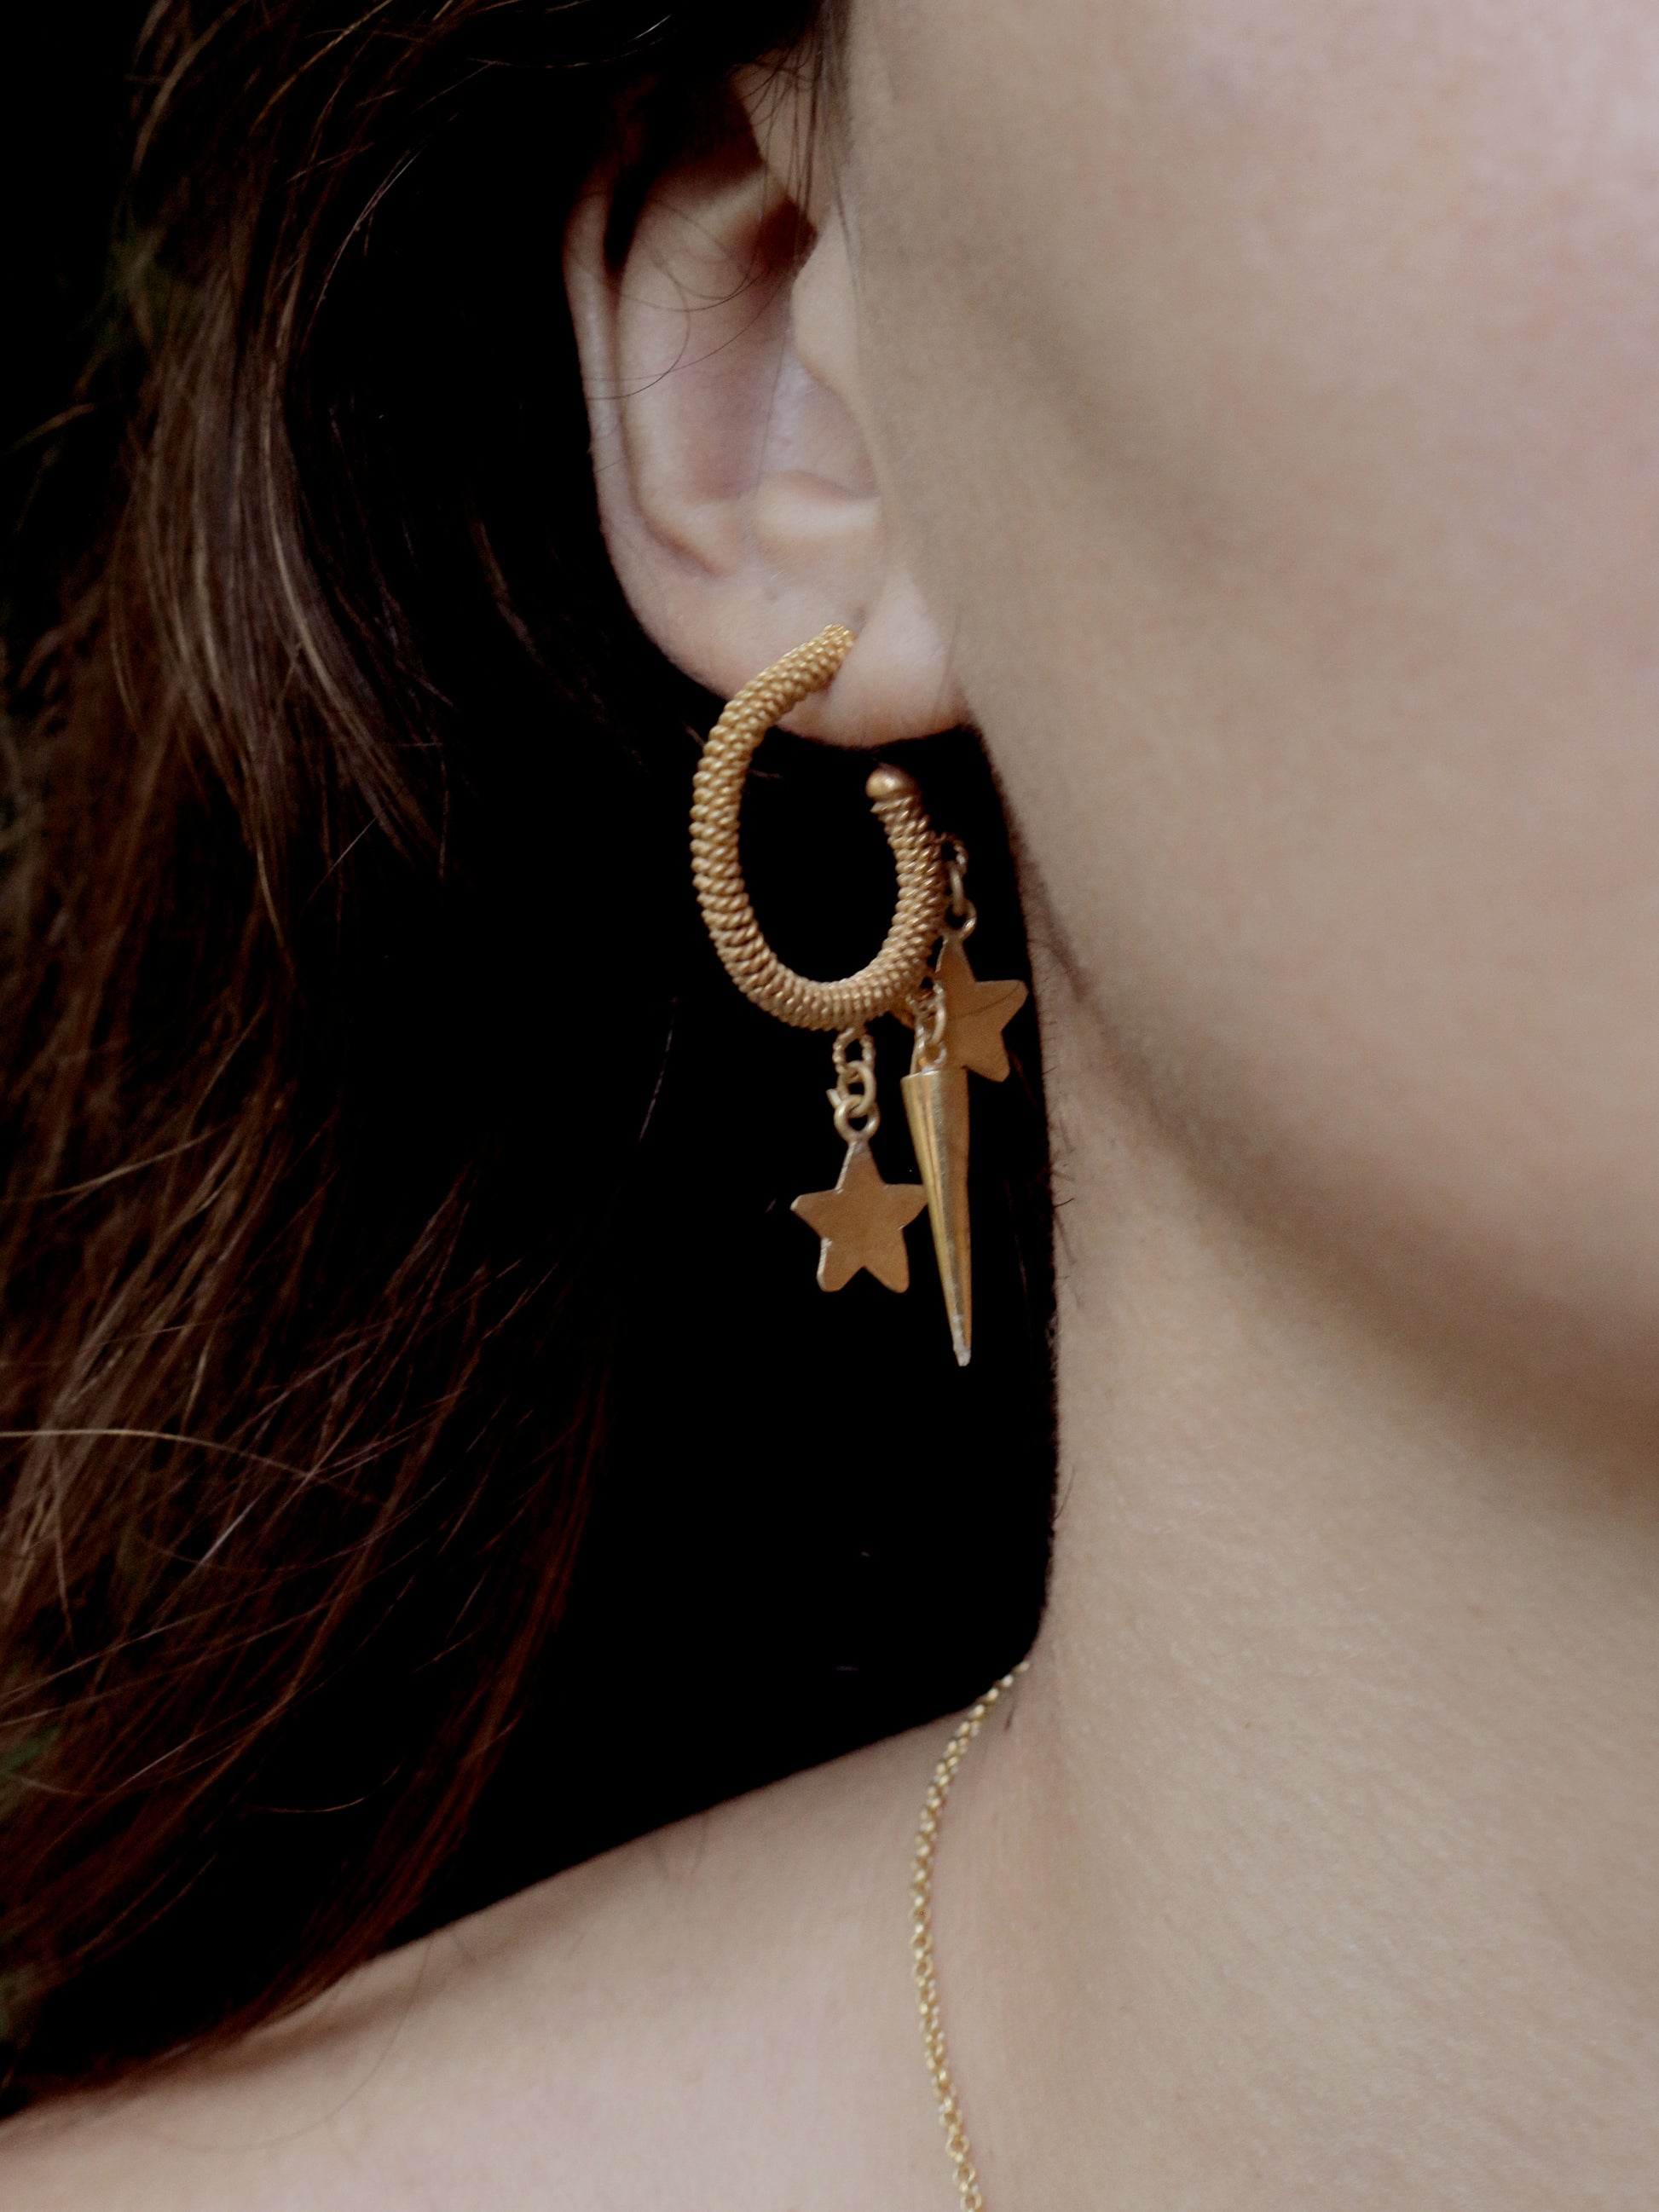 Handmade gold hoops earrings on model